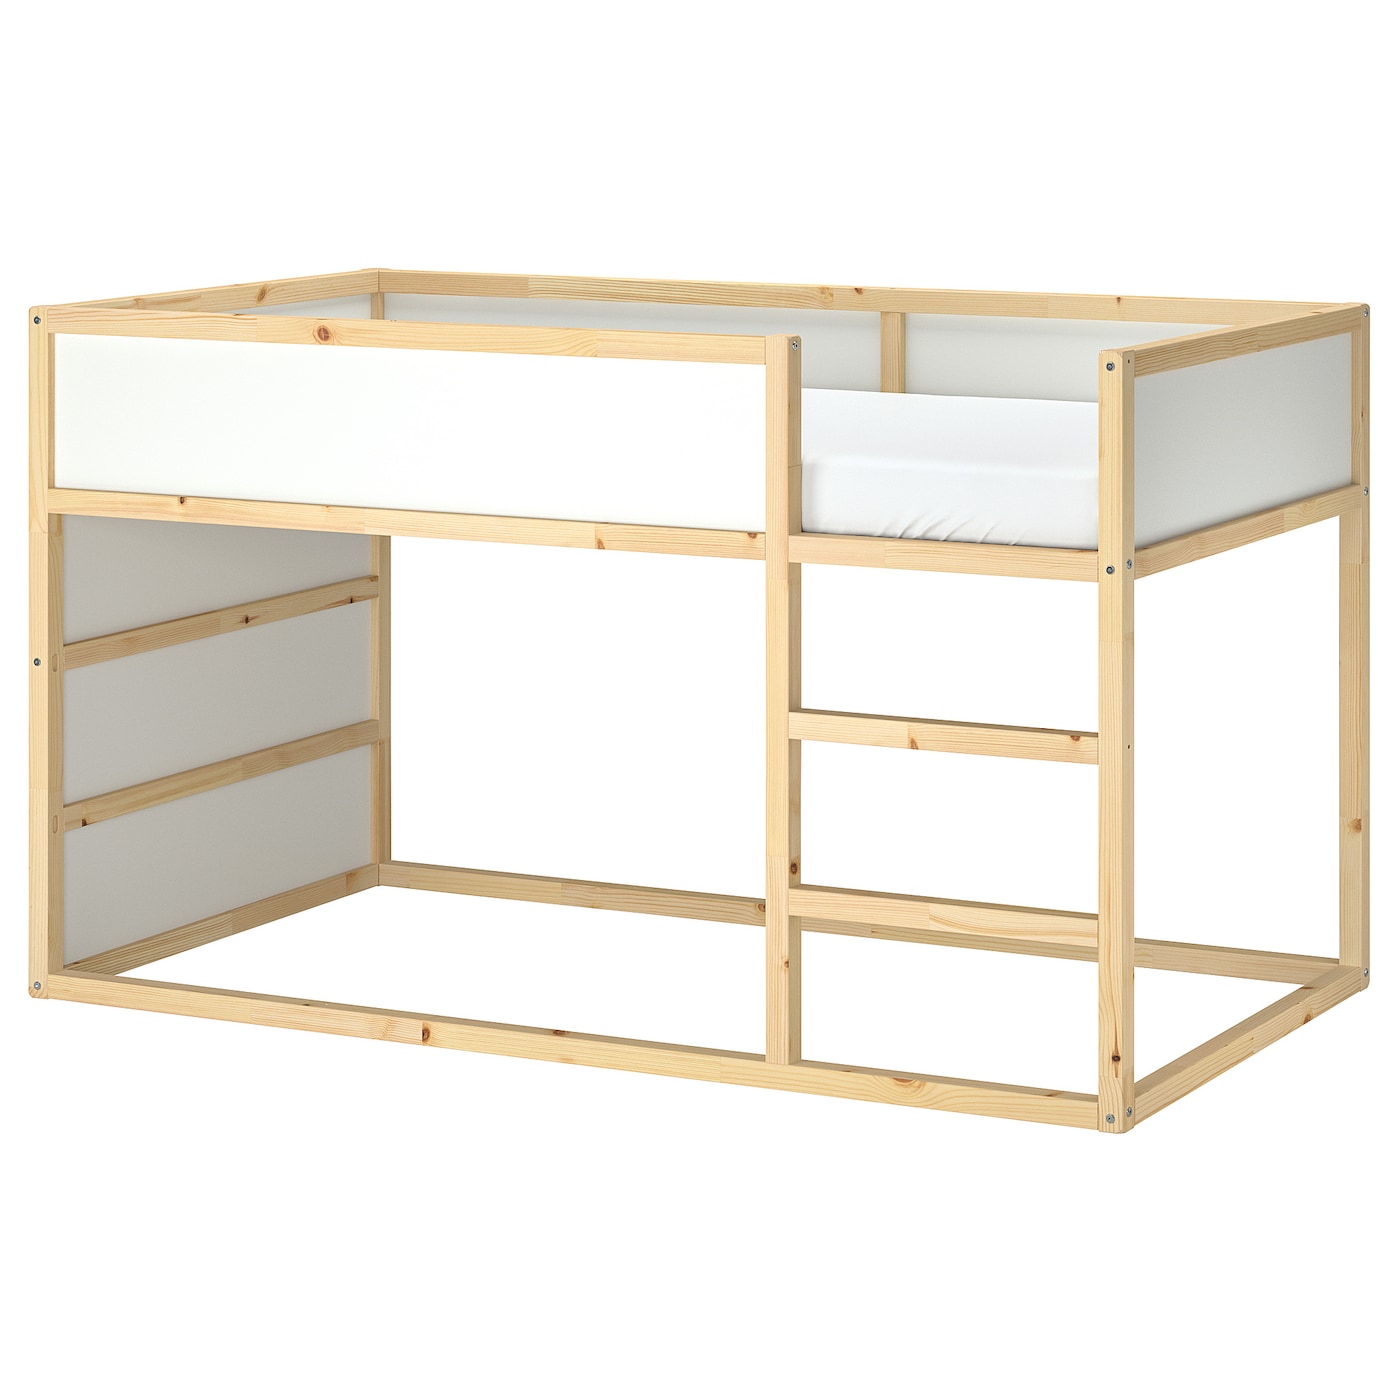 KURA reversible bed white/pine - IKEA